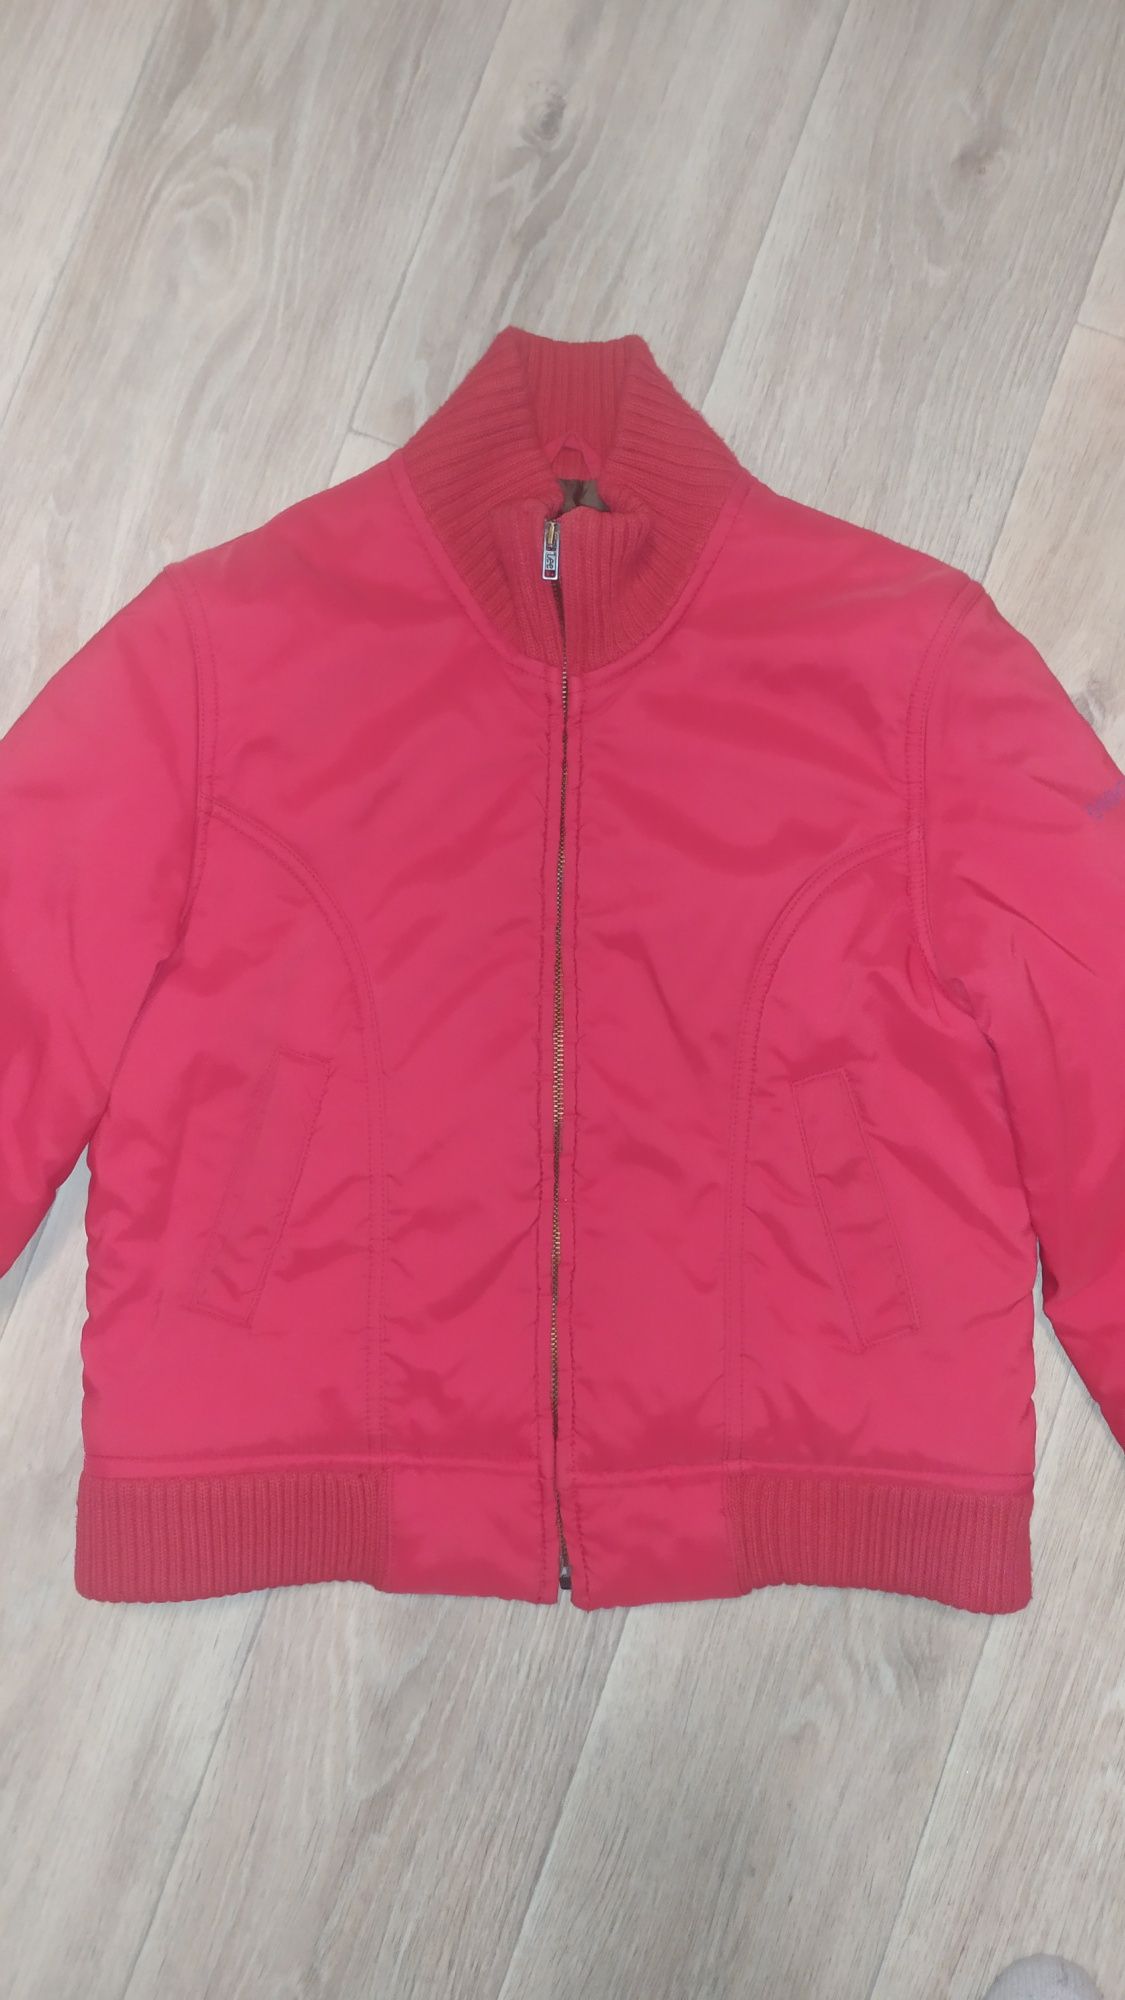 продам жіночу демисезонну куртку червоного кольору розмір s. Фірми lee